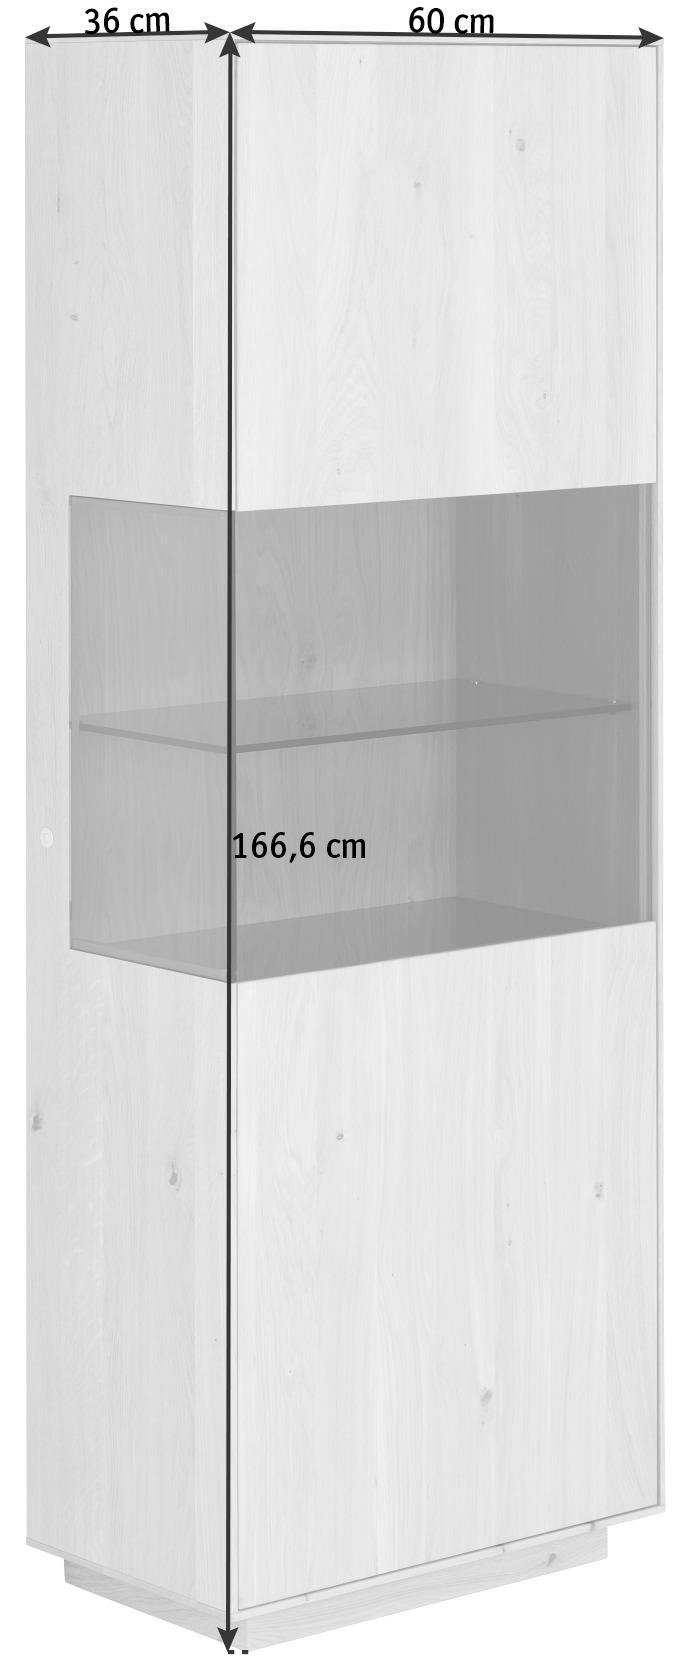 VITRINE Asteiche massiv Eichefarben Befestigungsmaterial  - Eichefarben, Natur, Glas/Holz (60/166,6/36cm) - Anrei